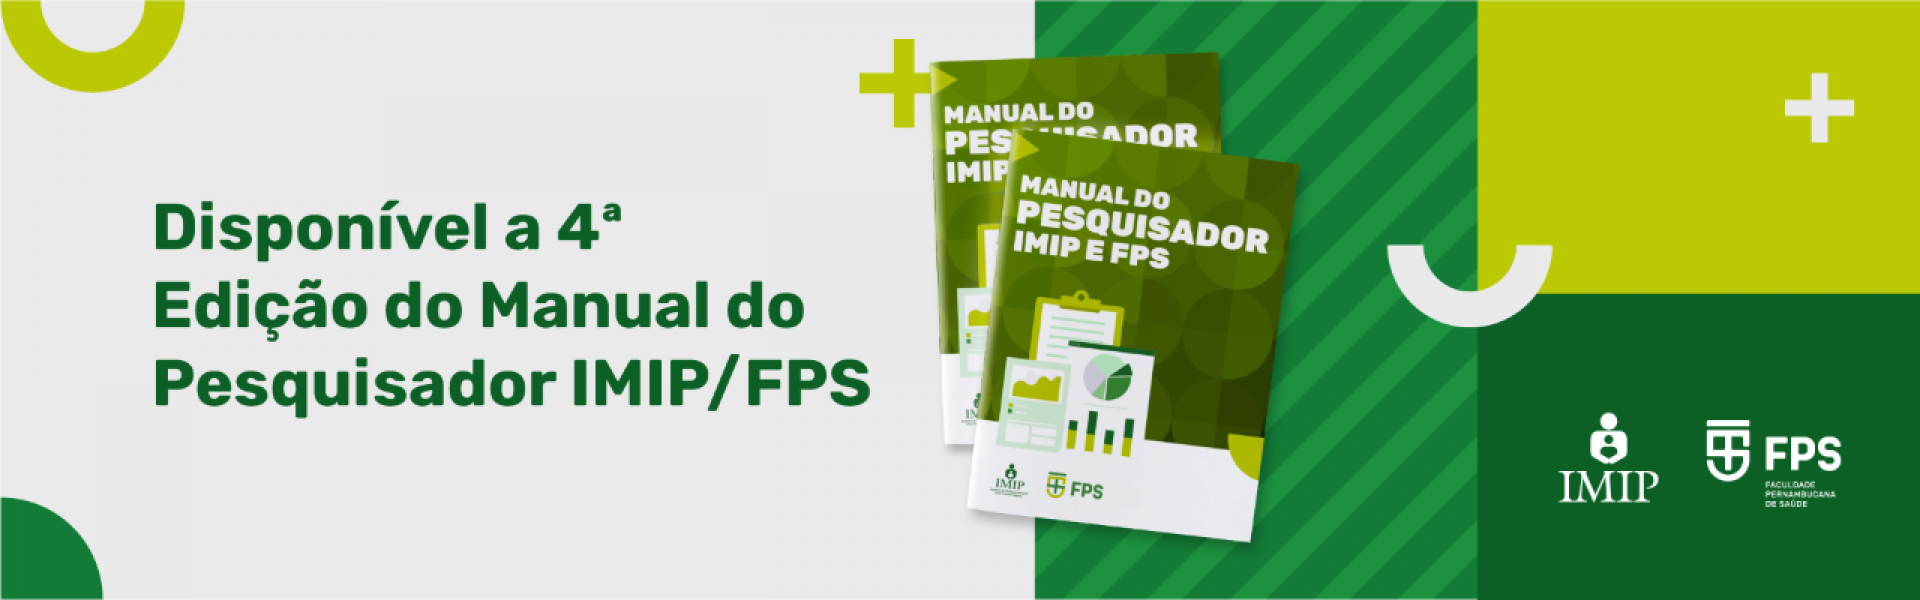 Manual do Pesquisador - IMIP e FPS